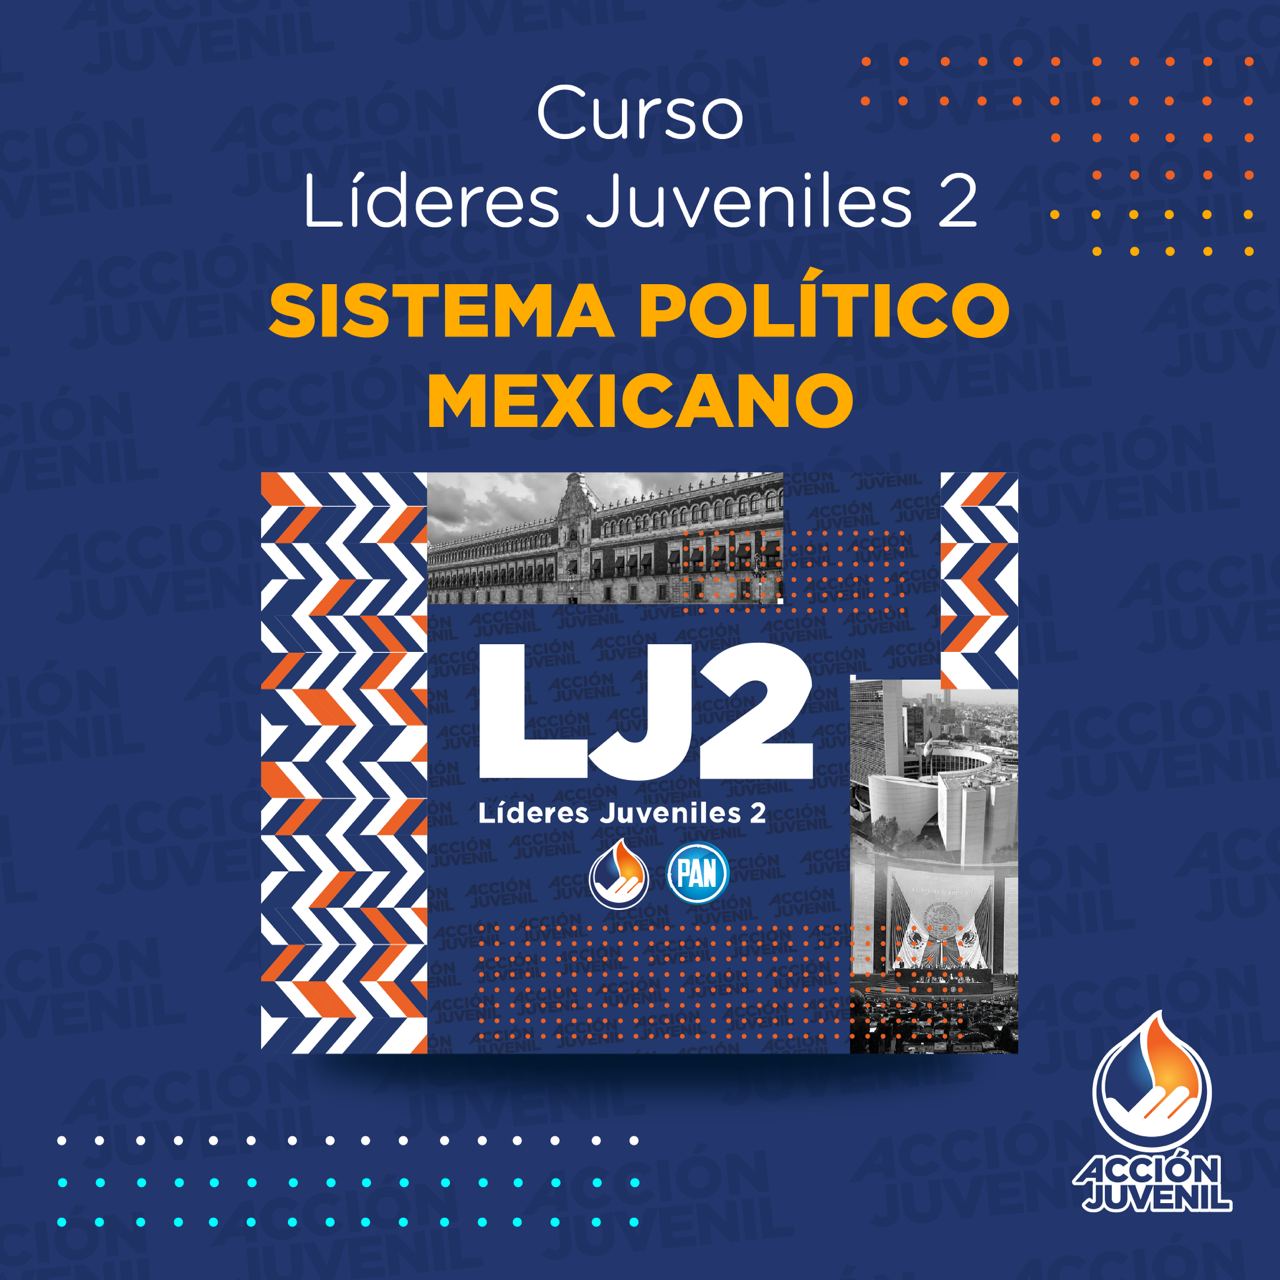 Curso Líderes Juveniles 2 Sistema Político Mexicano Guanajuato, GTO 26/06/22